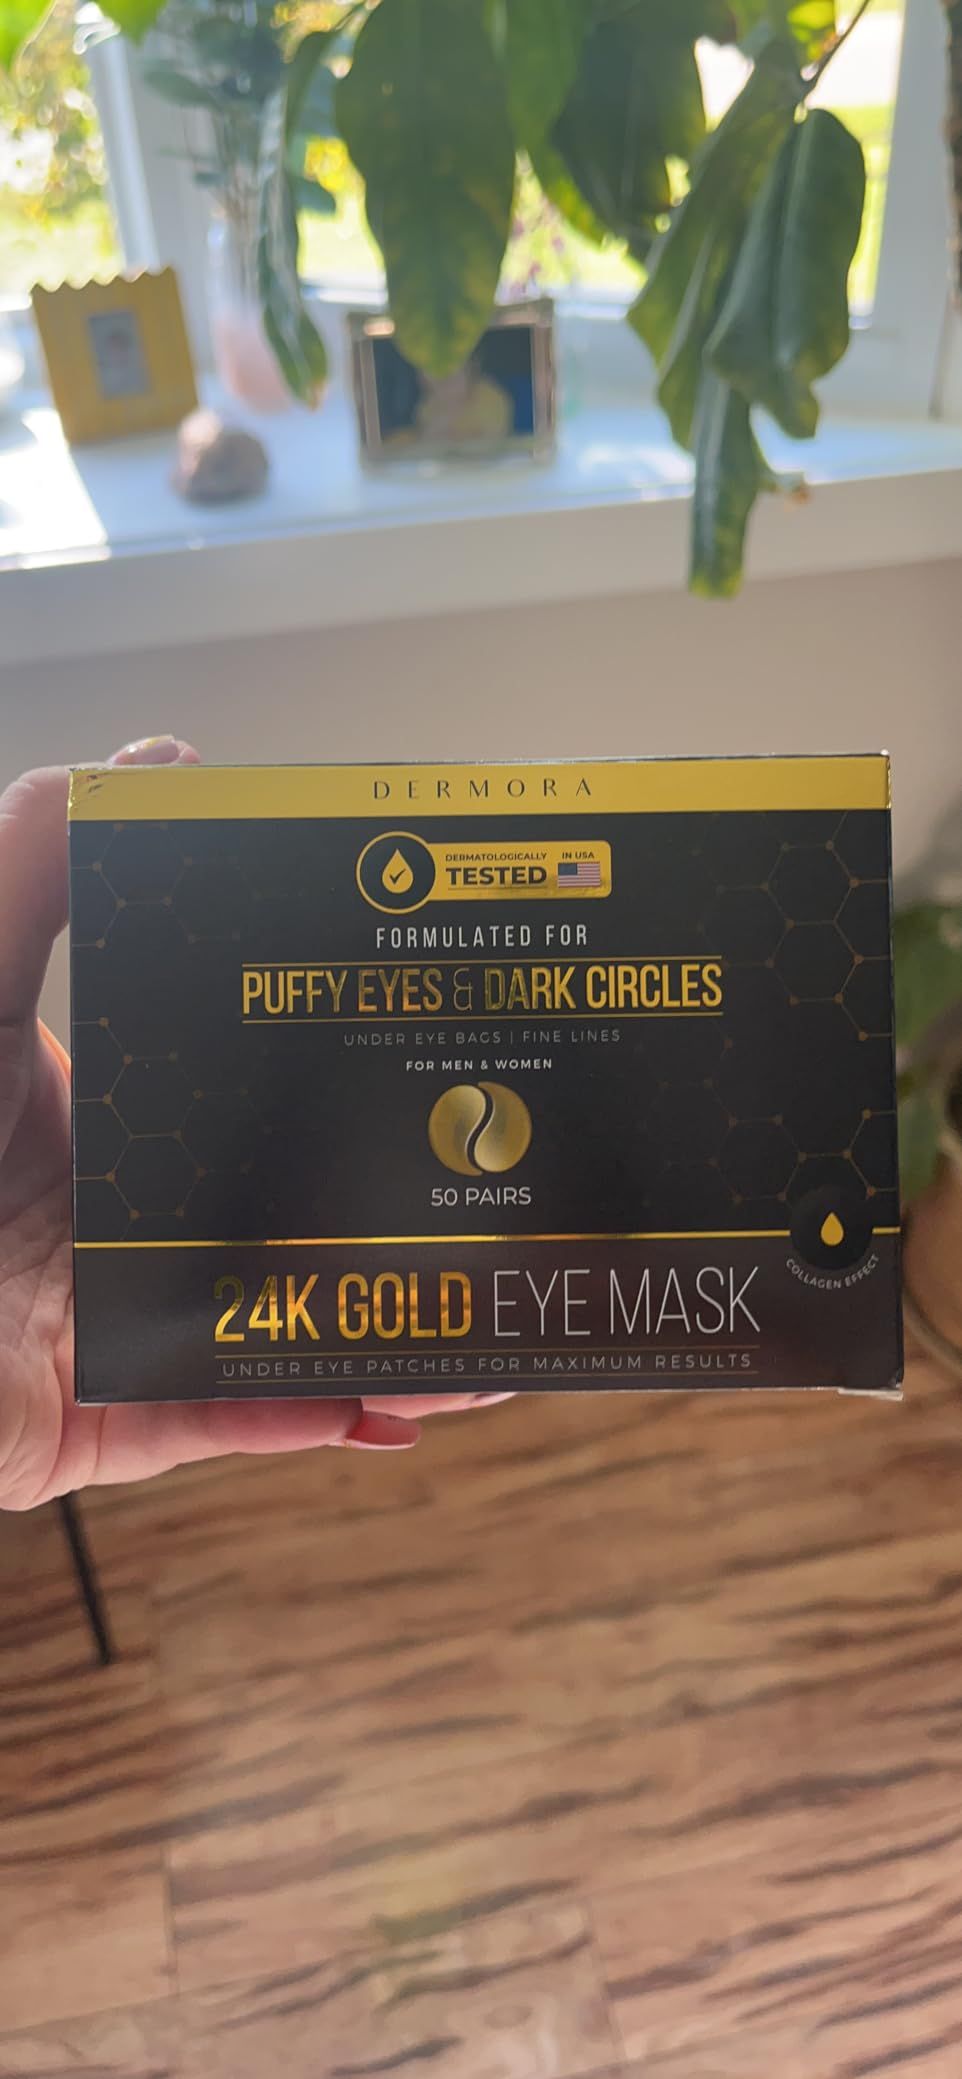 DERMORA Golden Glow Under Eye Patches (50 Pairs Eye Gels) - Rejuvenating Treatment for Dark Circl... | Amazon (US)